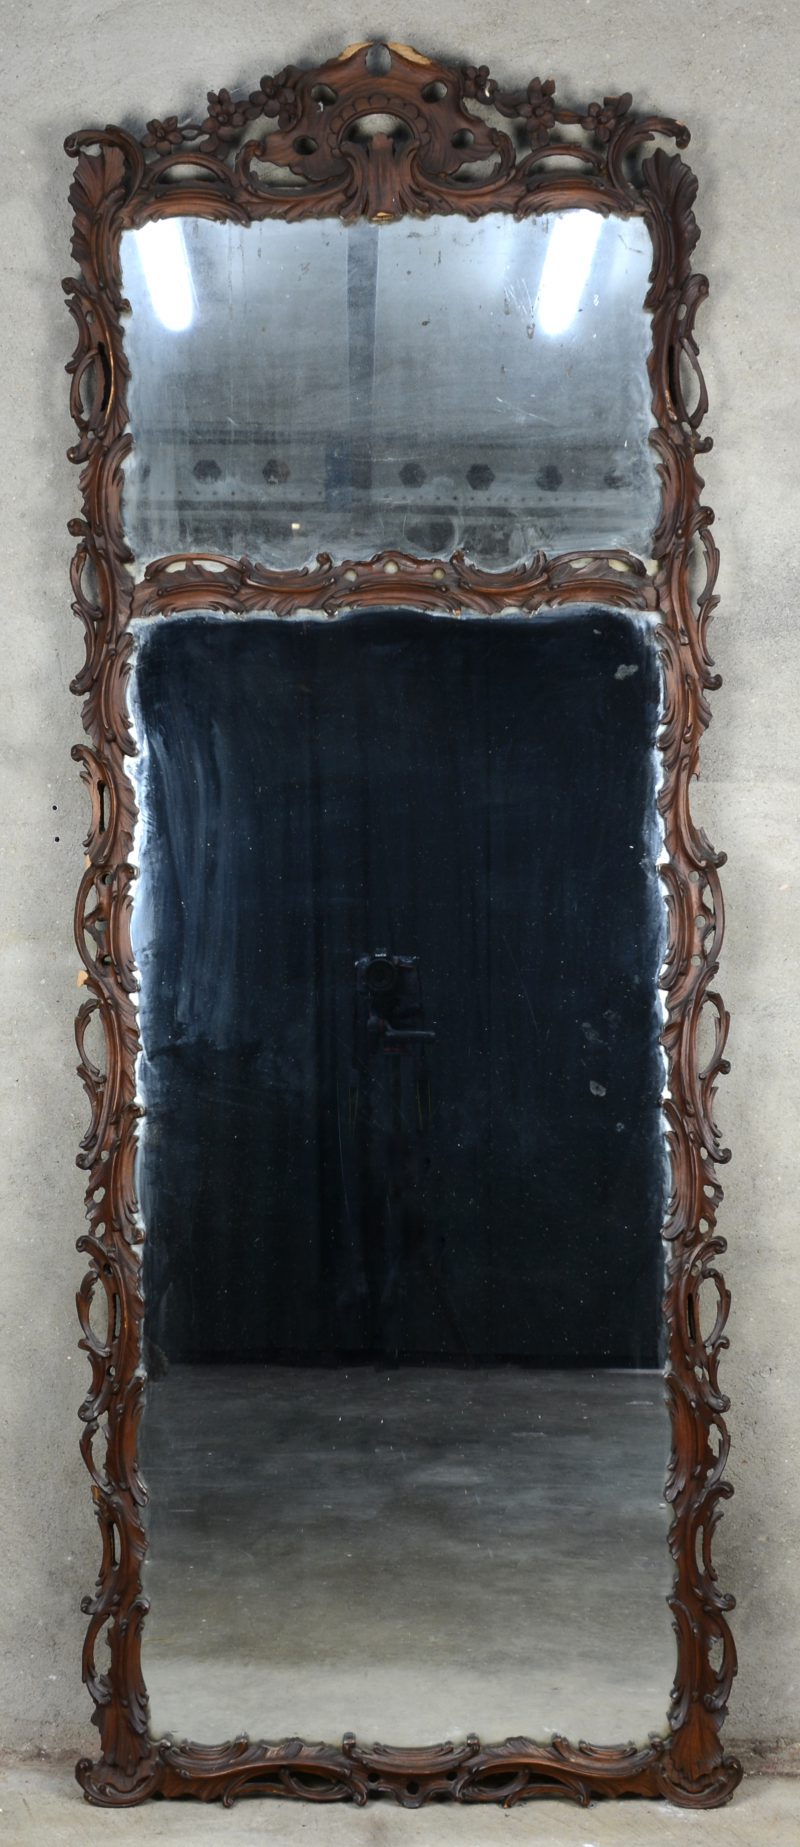 Spiegel van gebeeldhouwd hout in rococostijl. Letsels.